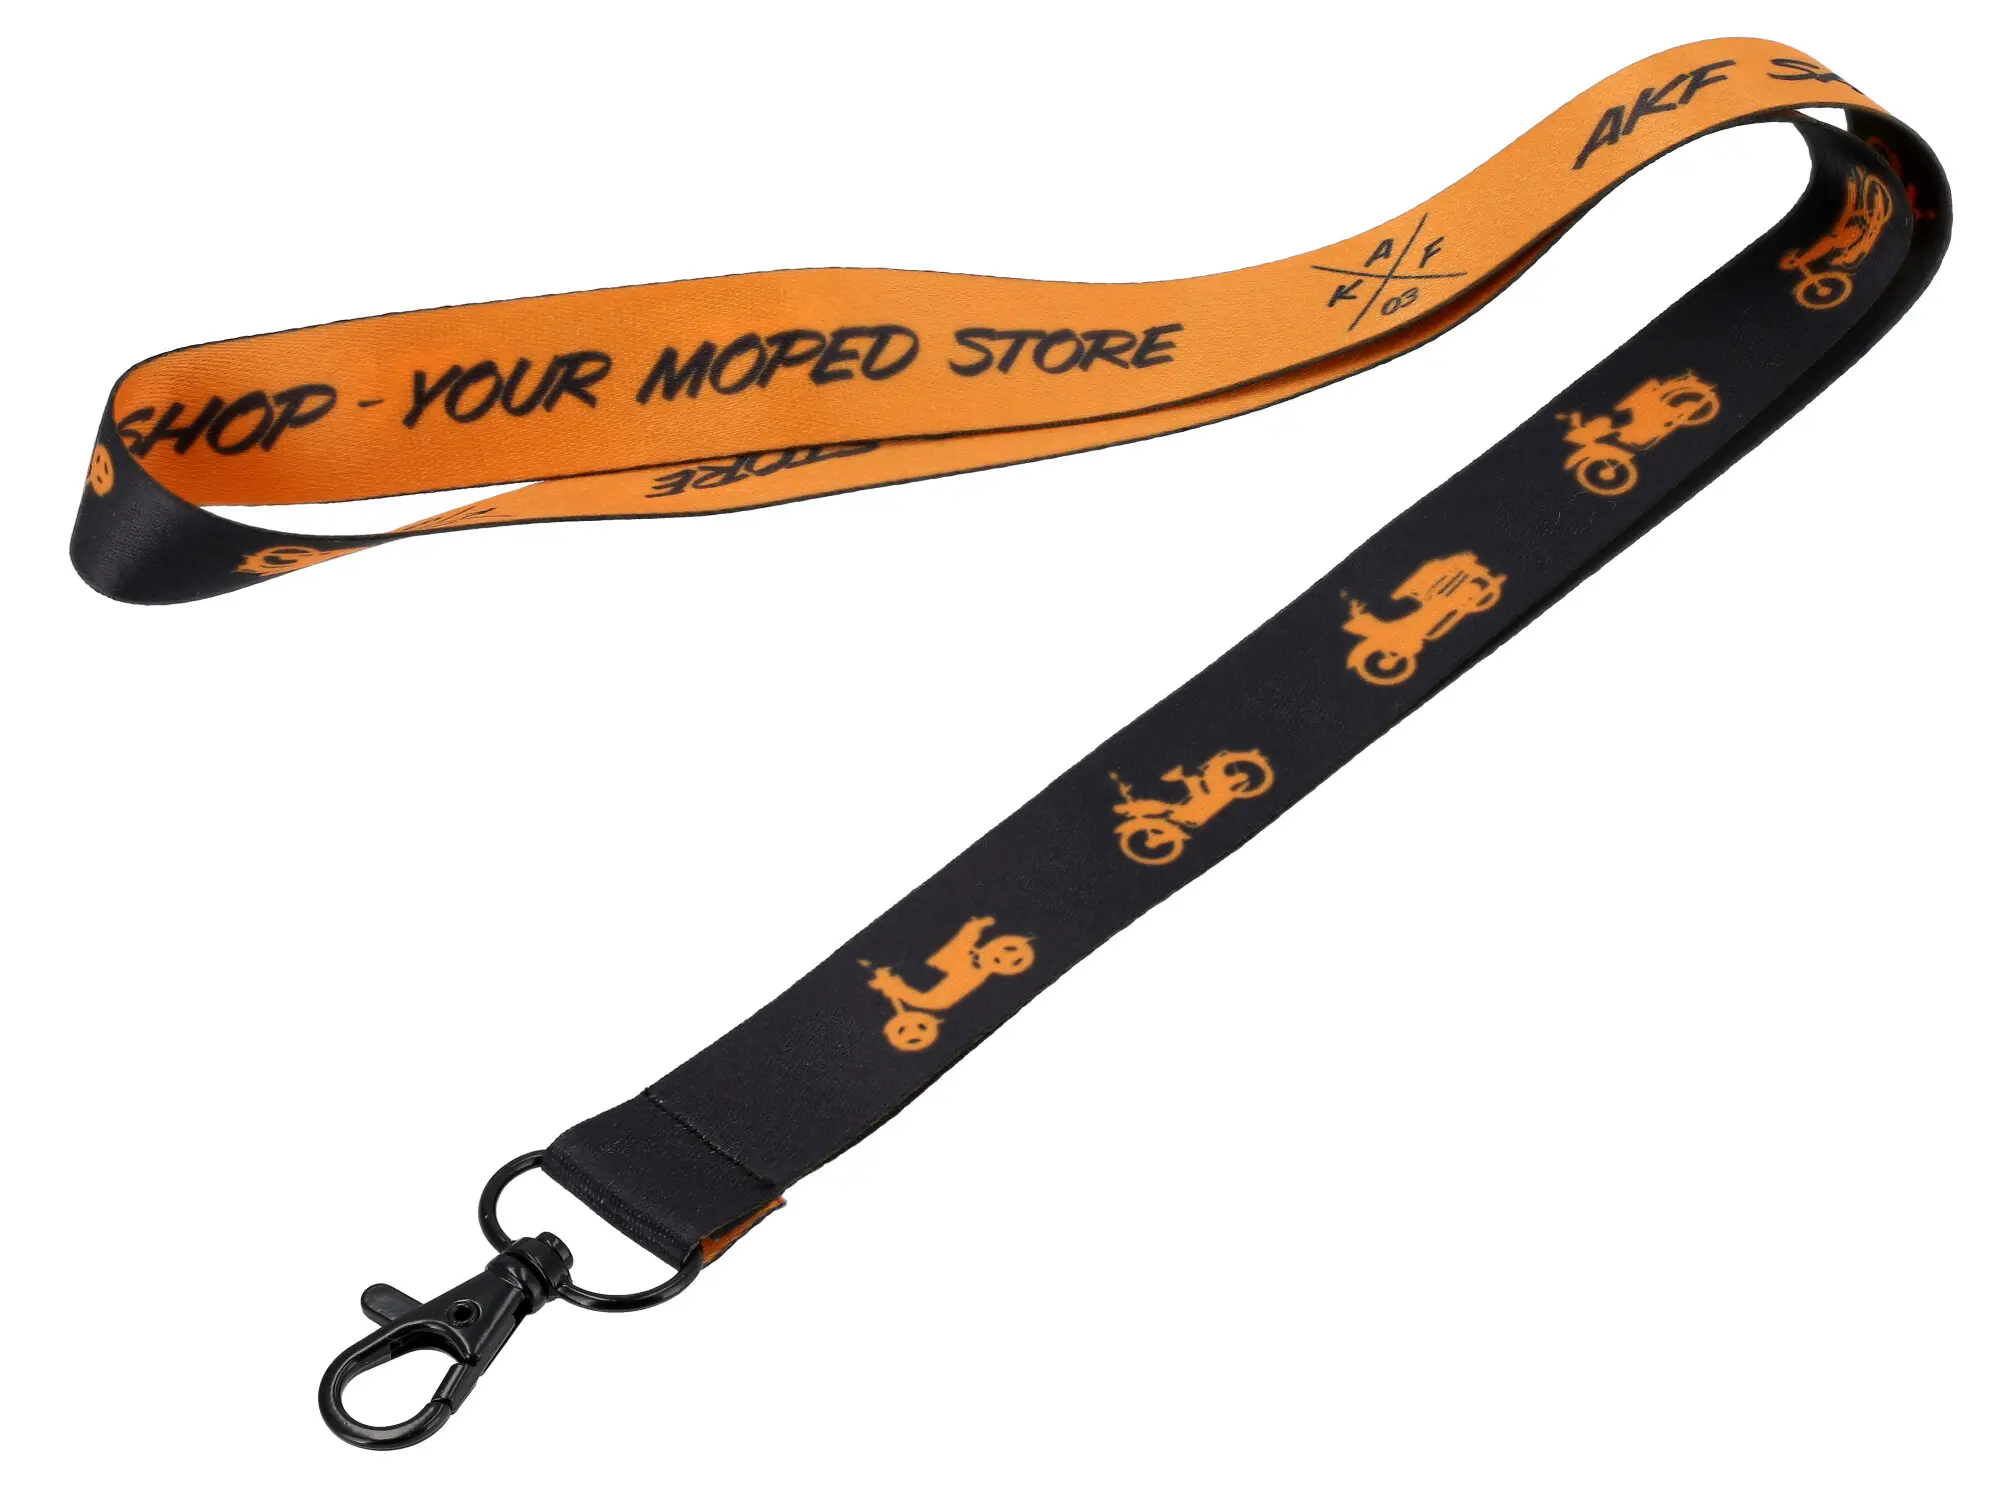 Schlüsselband "AKF Mopedparade" schwarz/orange, mit Karabinerhaken, Item no: 10077898 - Image 1